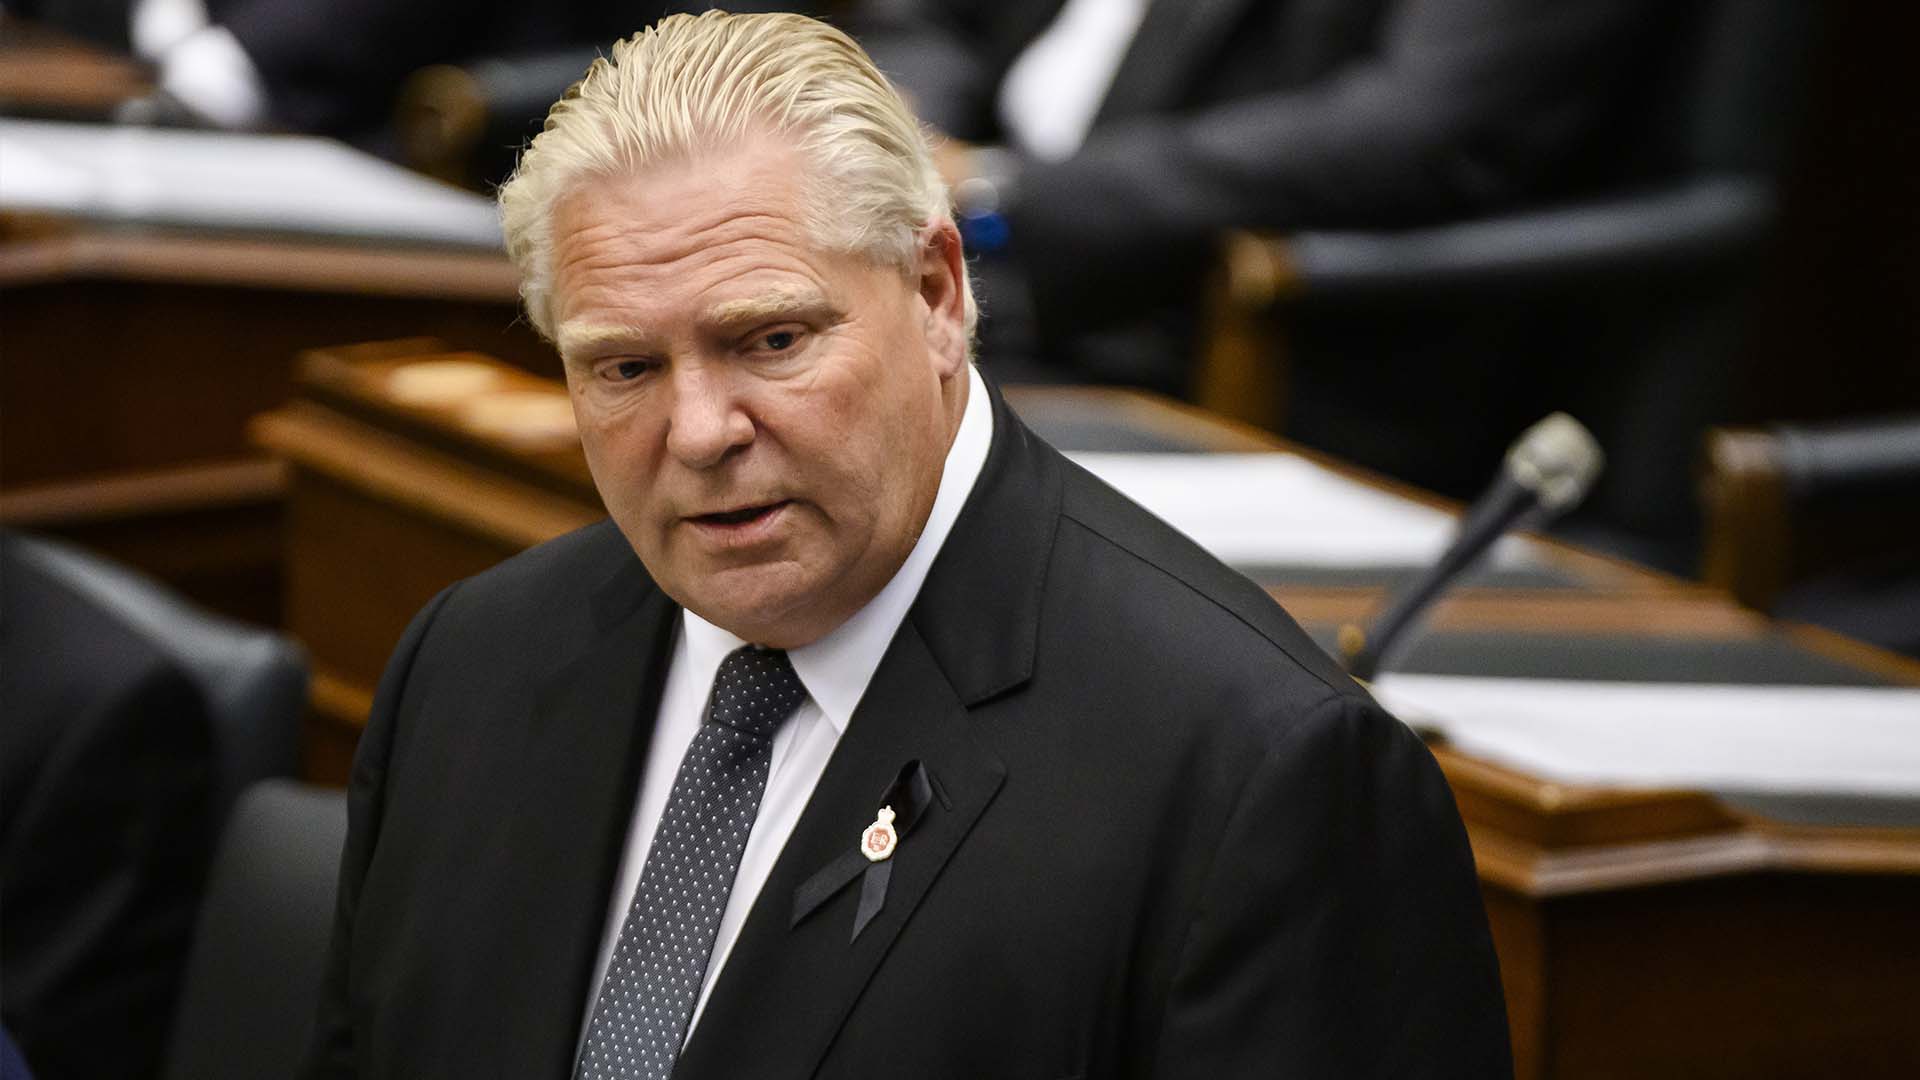 Lors de la période de questions à l'Assemblée législative, le premier ministre de l'Ontario a expliqué que la Commission sur l'état d'urgence est «une enquête fédérale sur la décision du gouvernement fédéral d'utiliser la loi fédérale sur les mesures d'urgence»